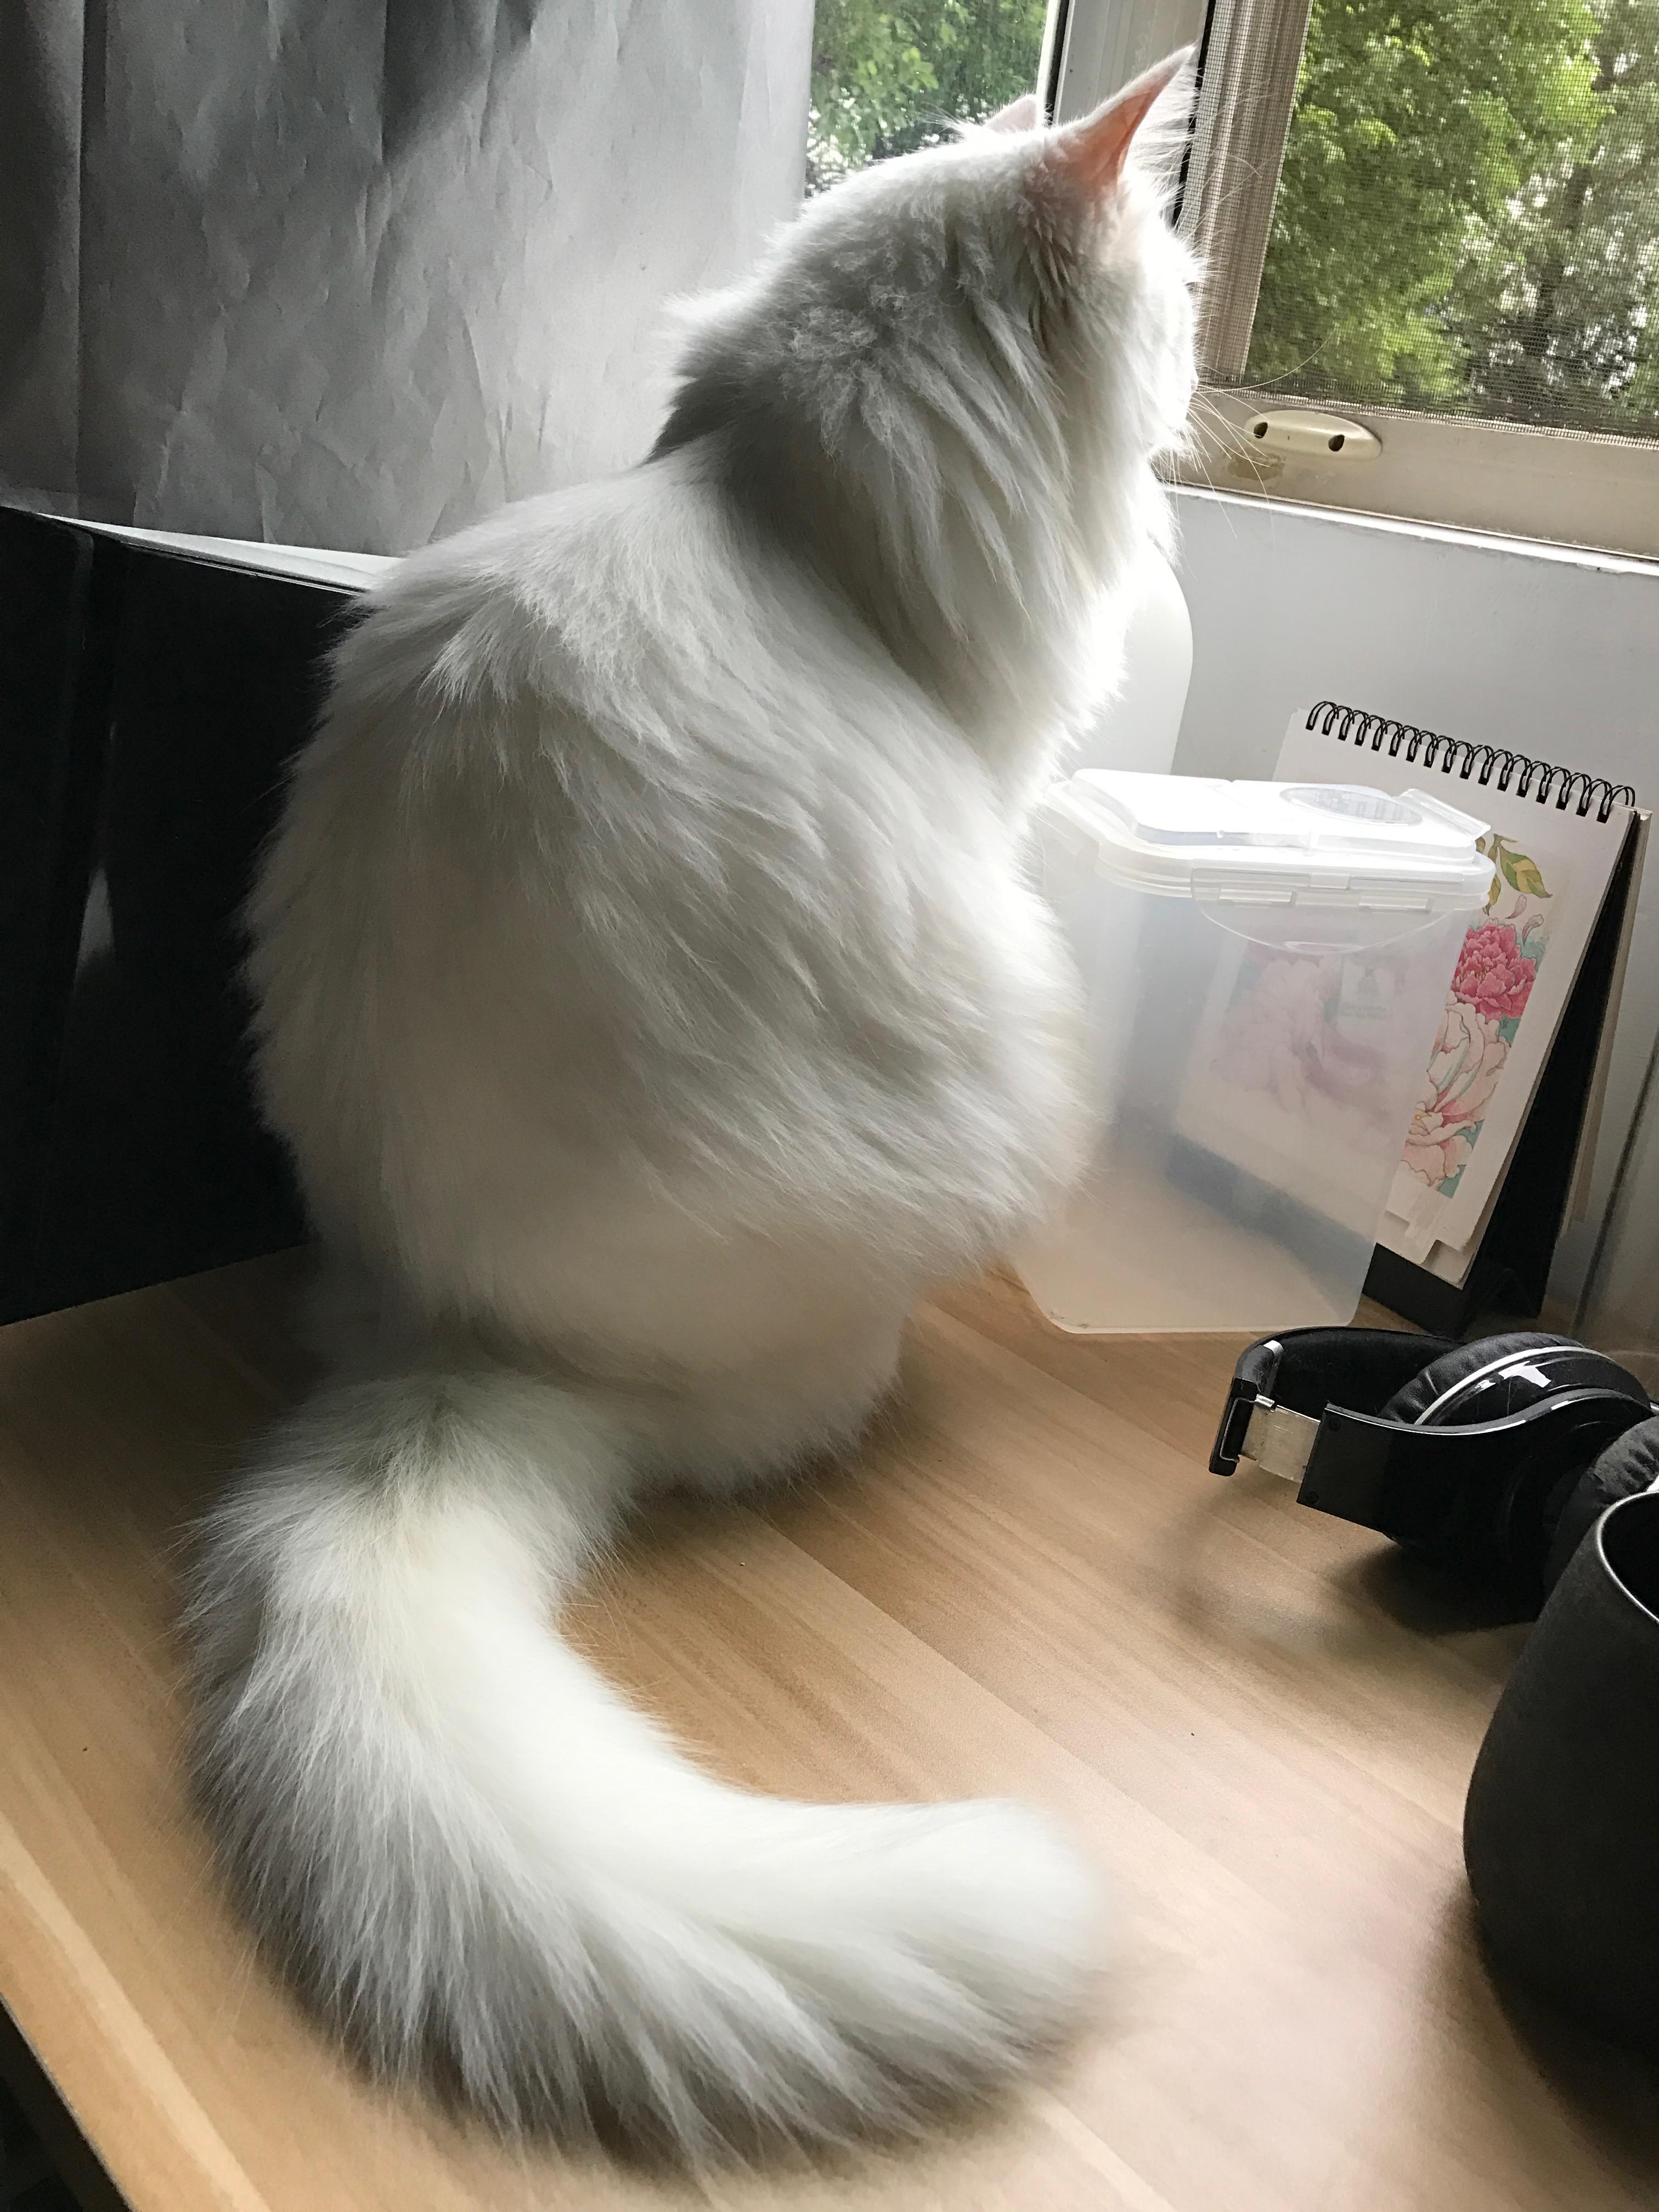 一只猫的剪影在窗口背景的 库存图片. 图片 包括有 毛皮, 视窗, 一个, 纵向, 位于, 宠物, 放松 - 126118751